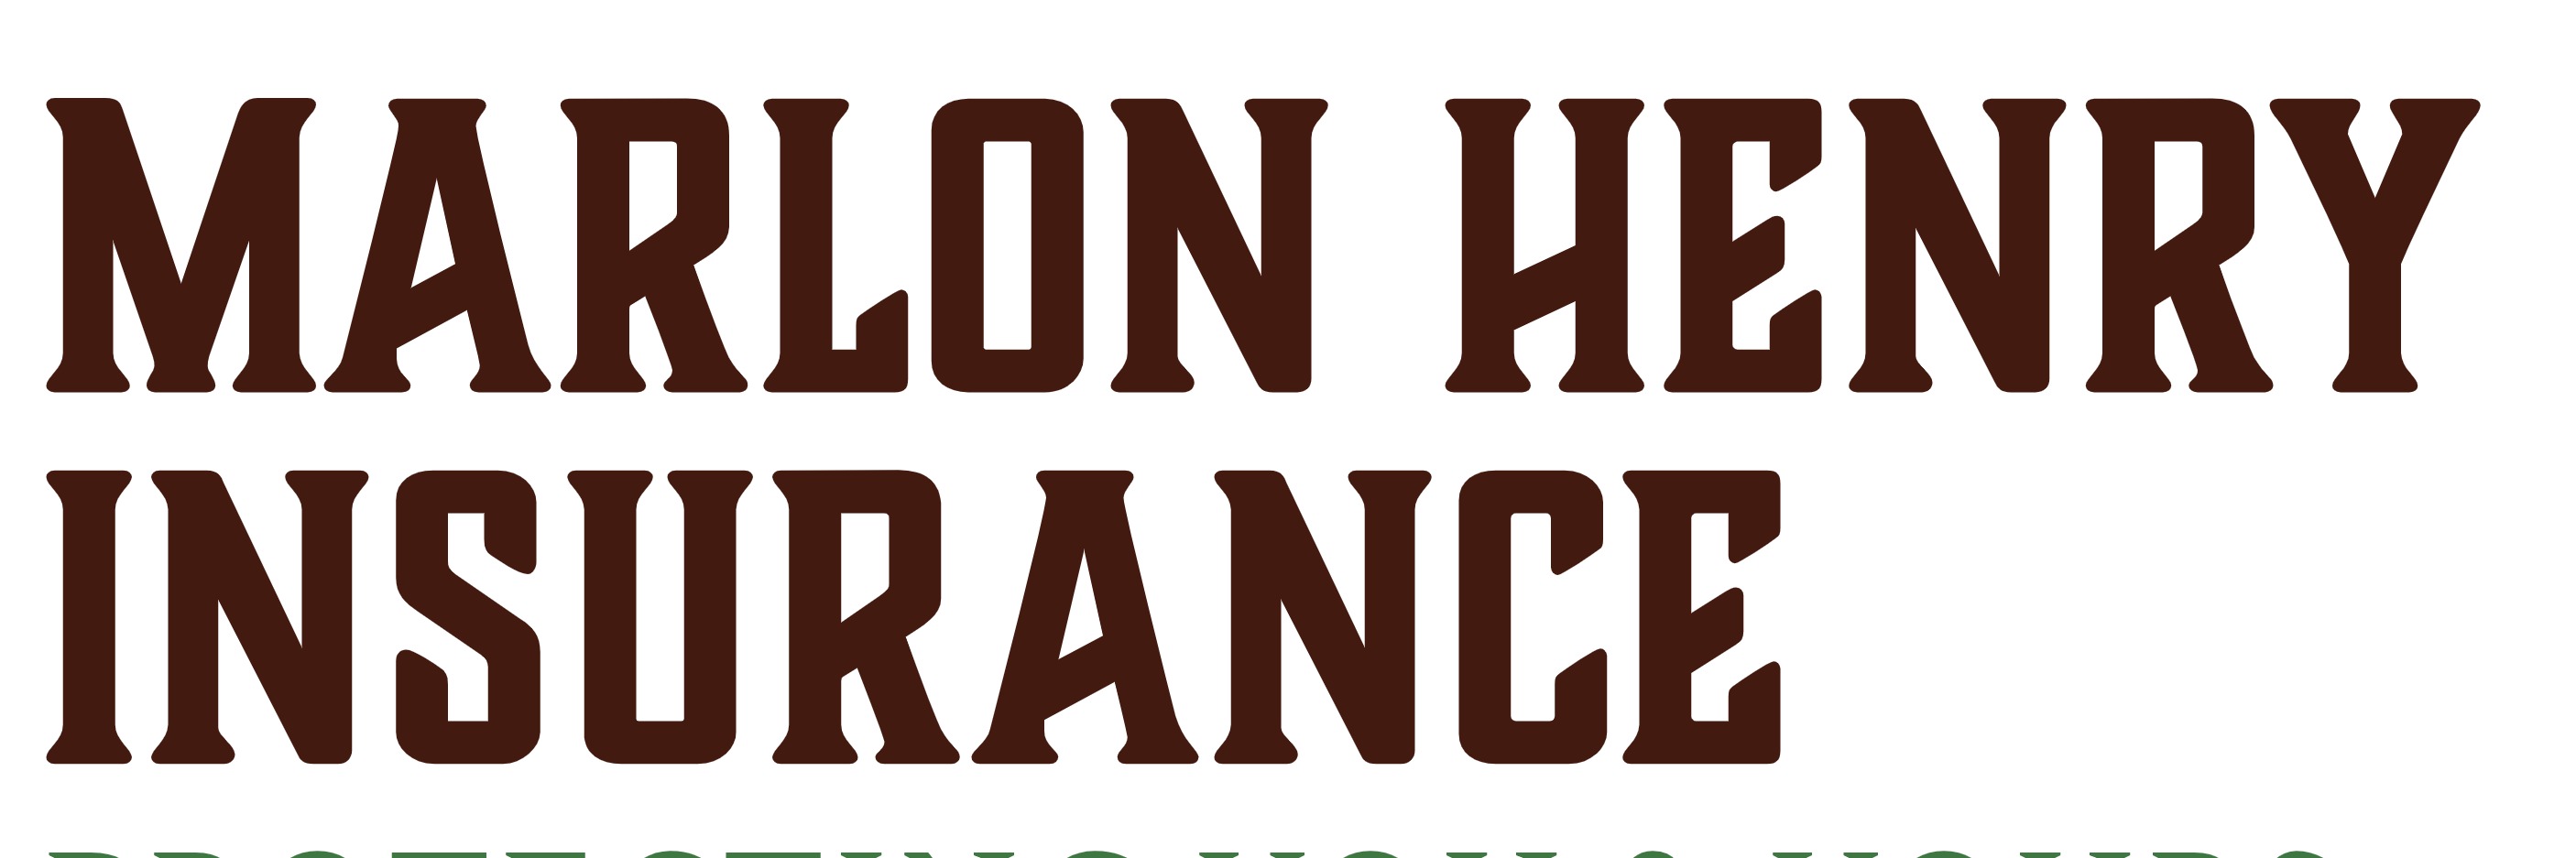 Banner of MARLON HENRY INSURANCE AGENCY